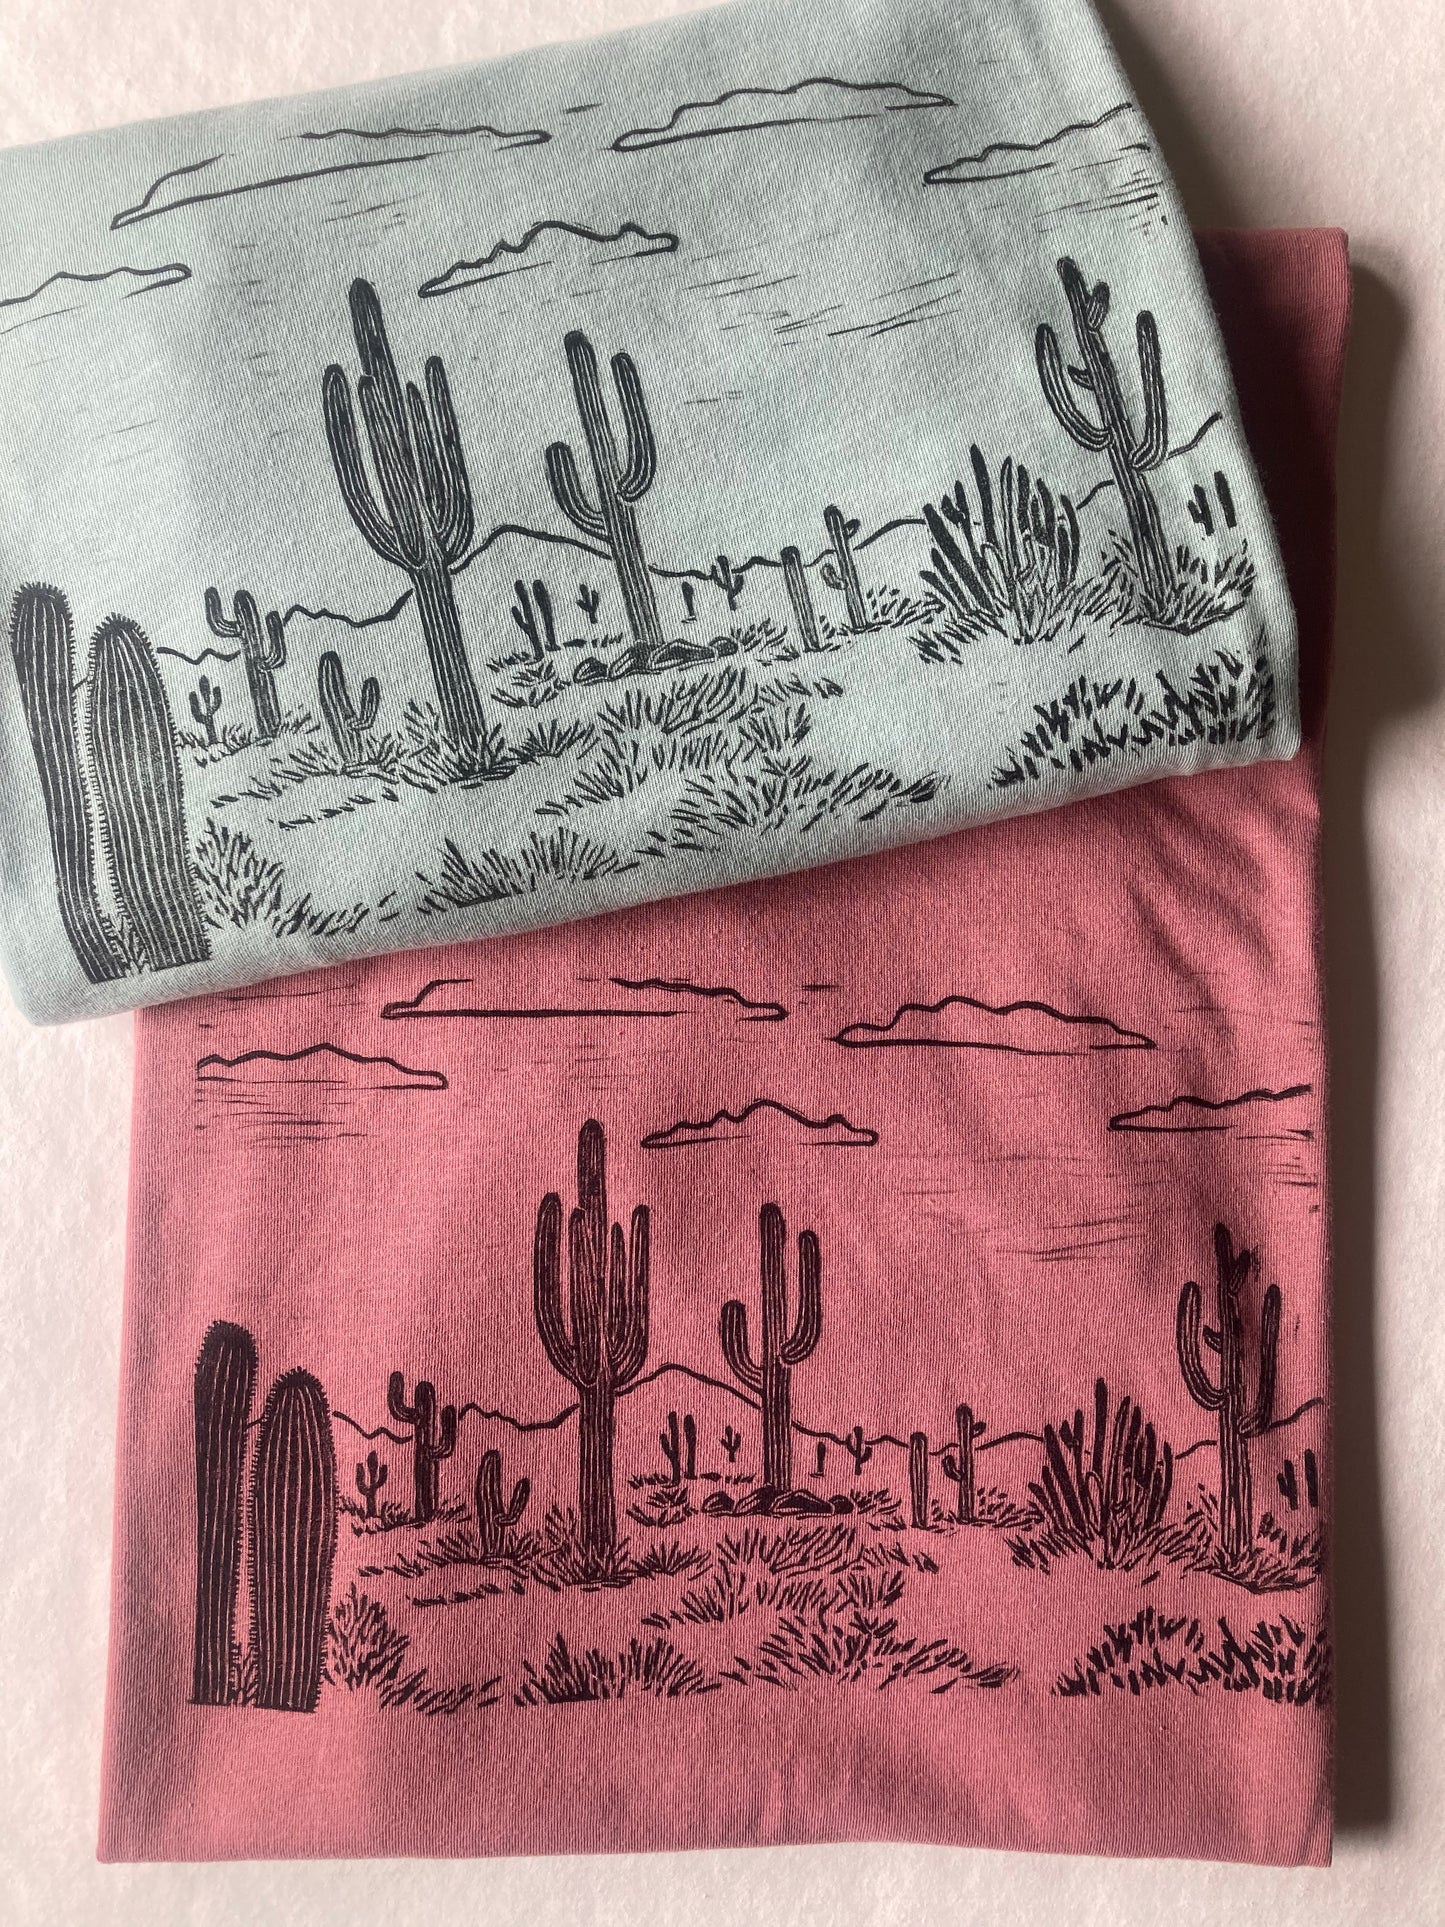 Cactus Unisex T-Shirt